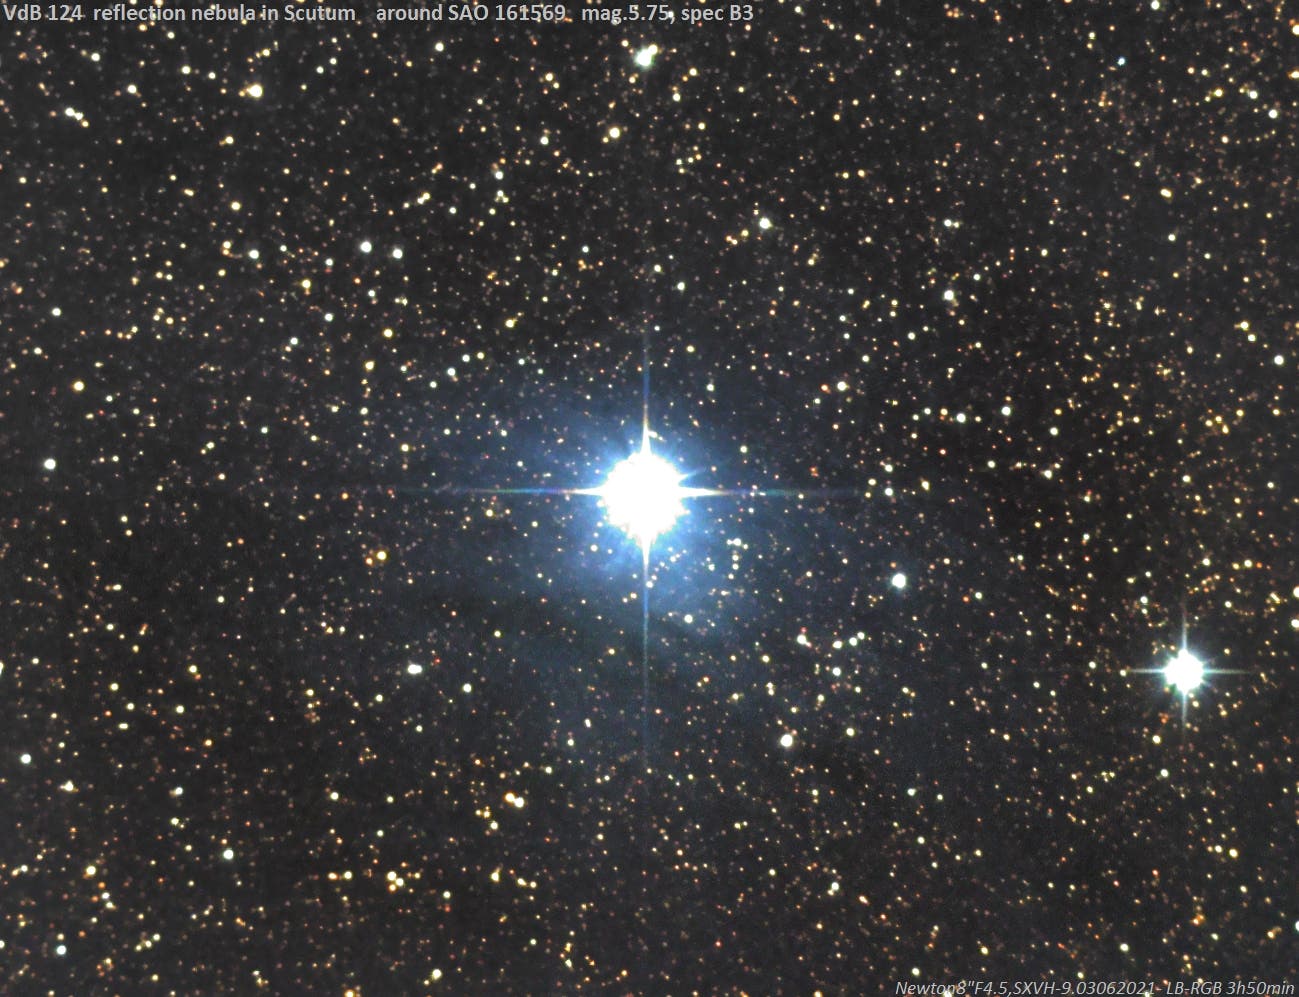 VdB 124 – Reflexionsnebel im Sternbild Schild